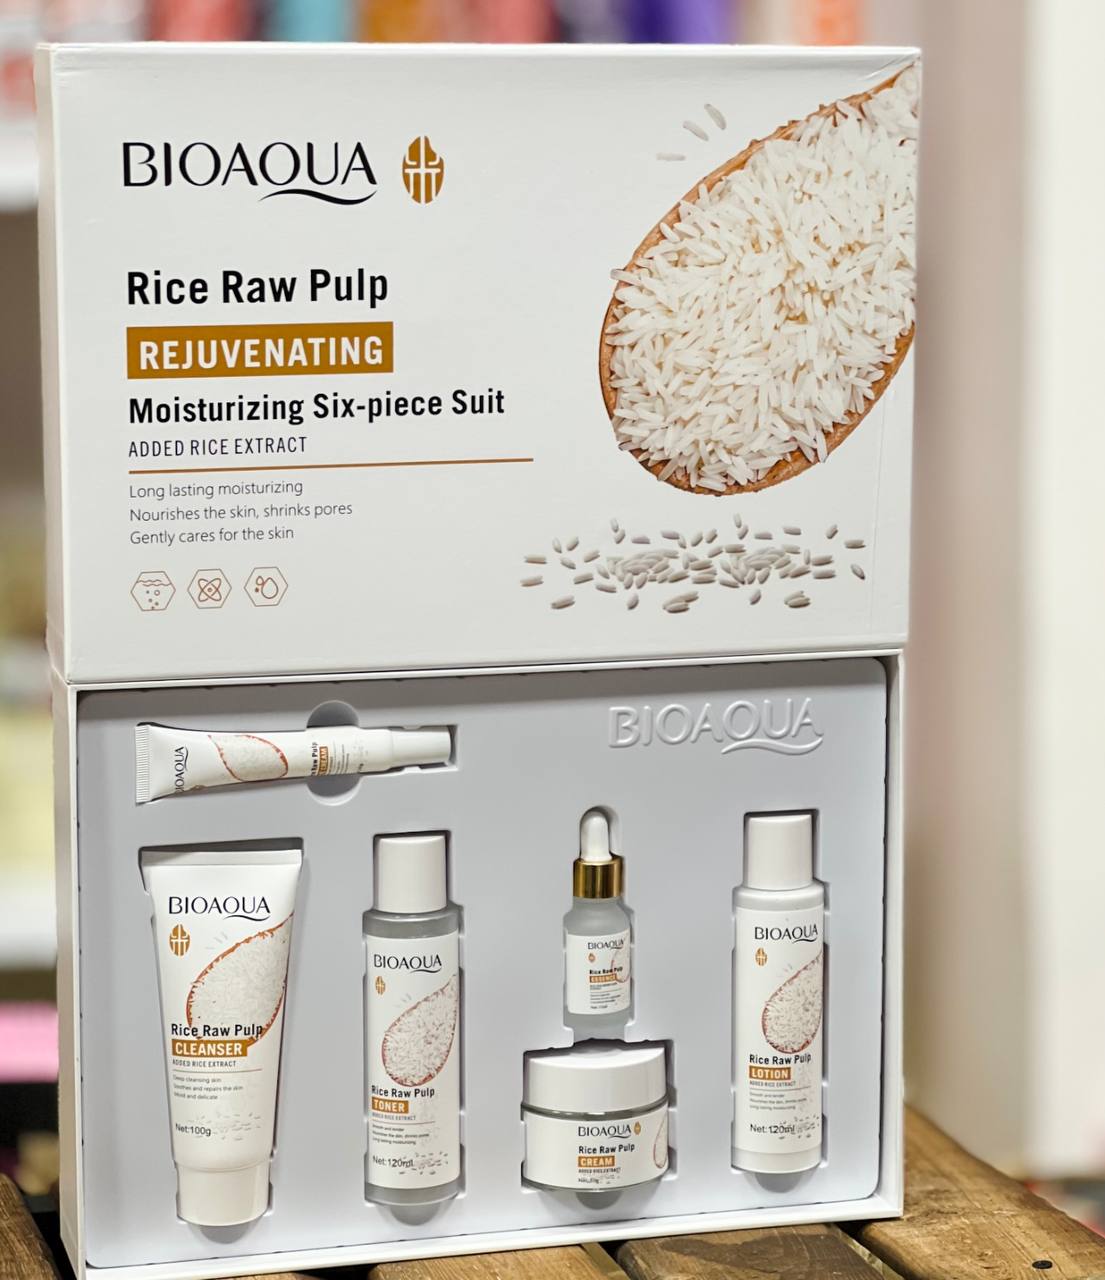 پک مراقبتی پوست عصاره ی برنج بیوآکوا (BIOAQUA)